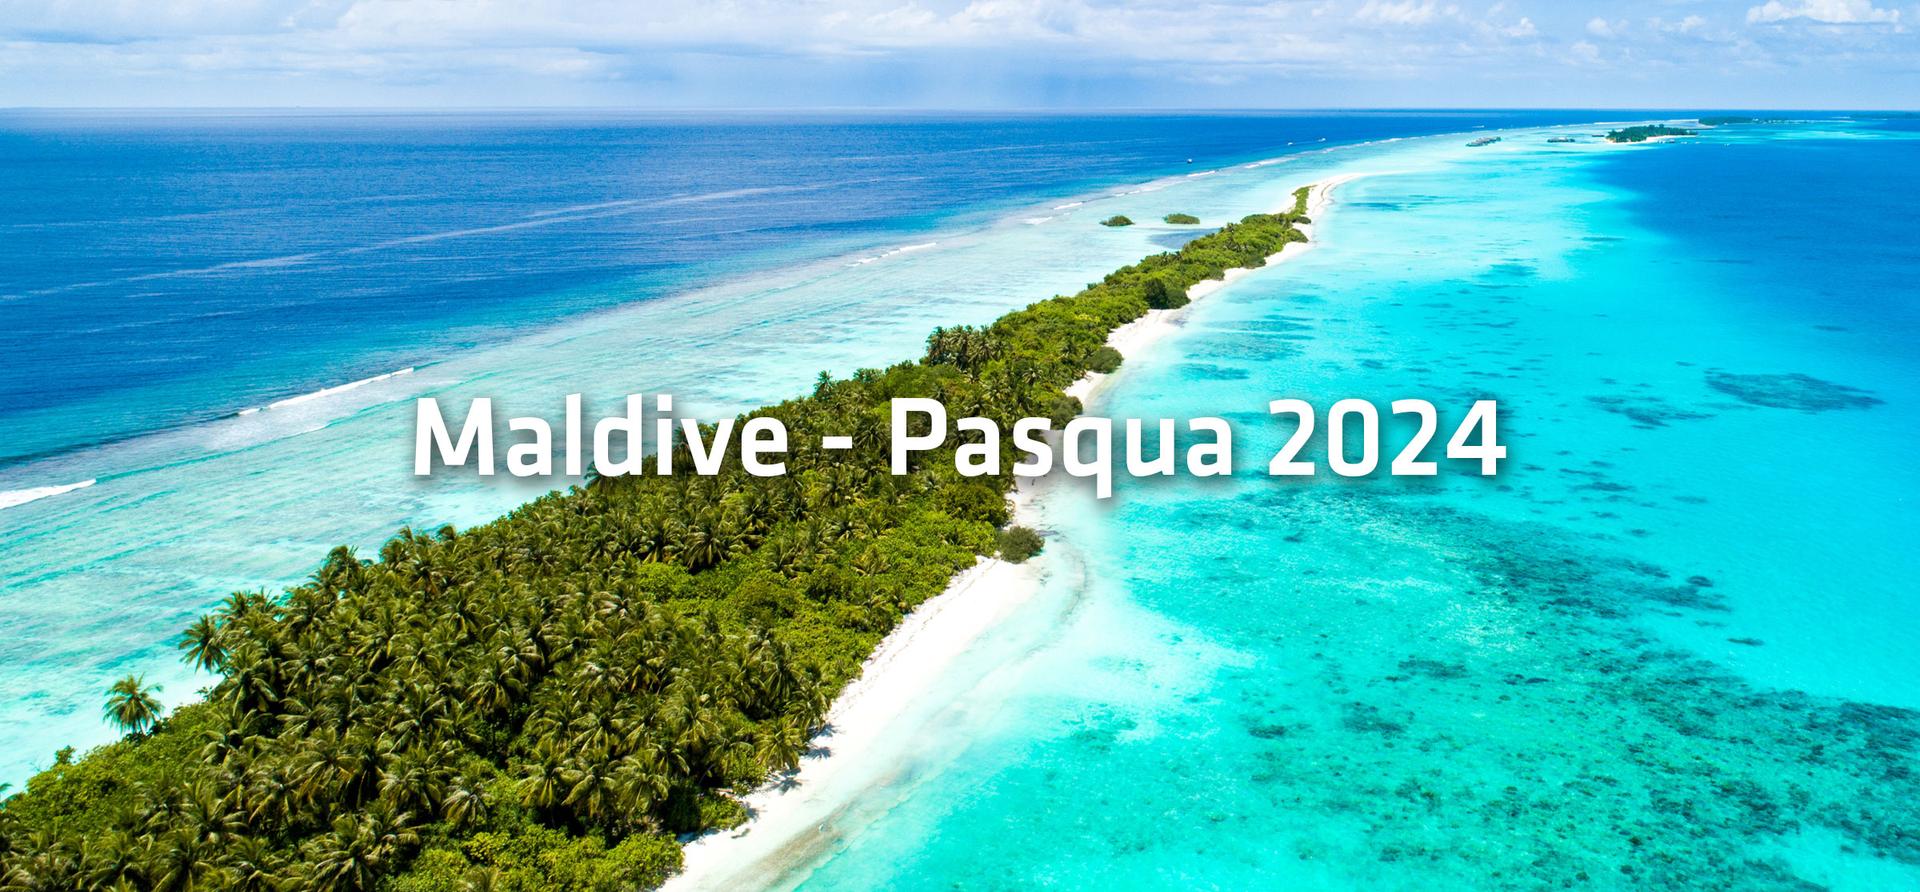 Maldive - Pasqua 2024